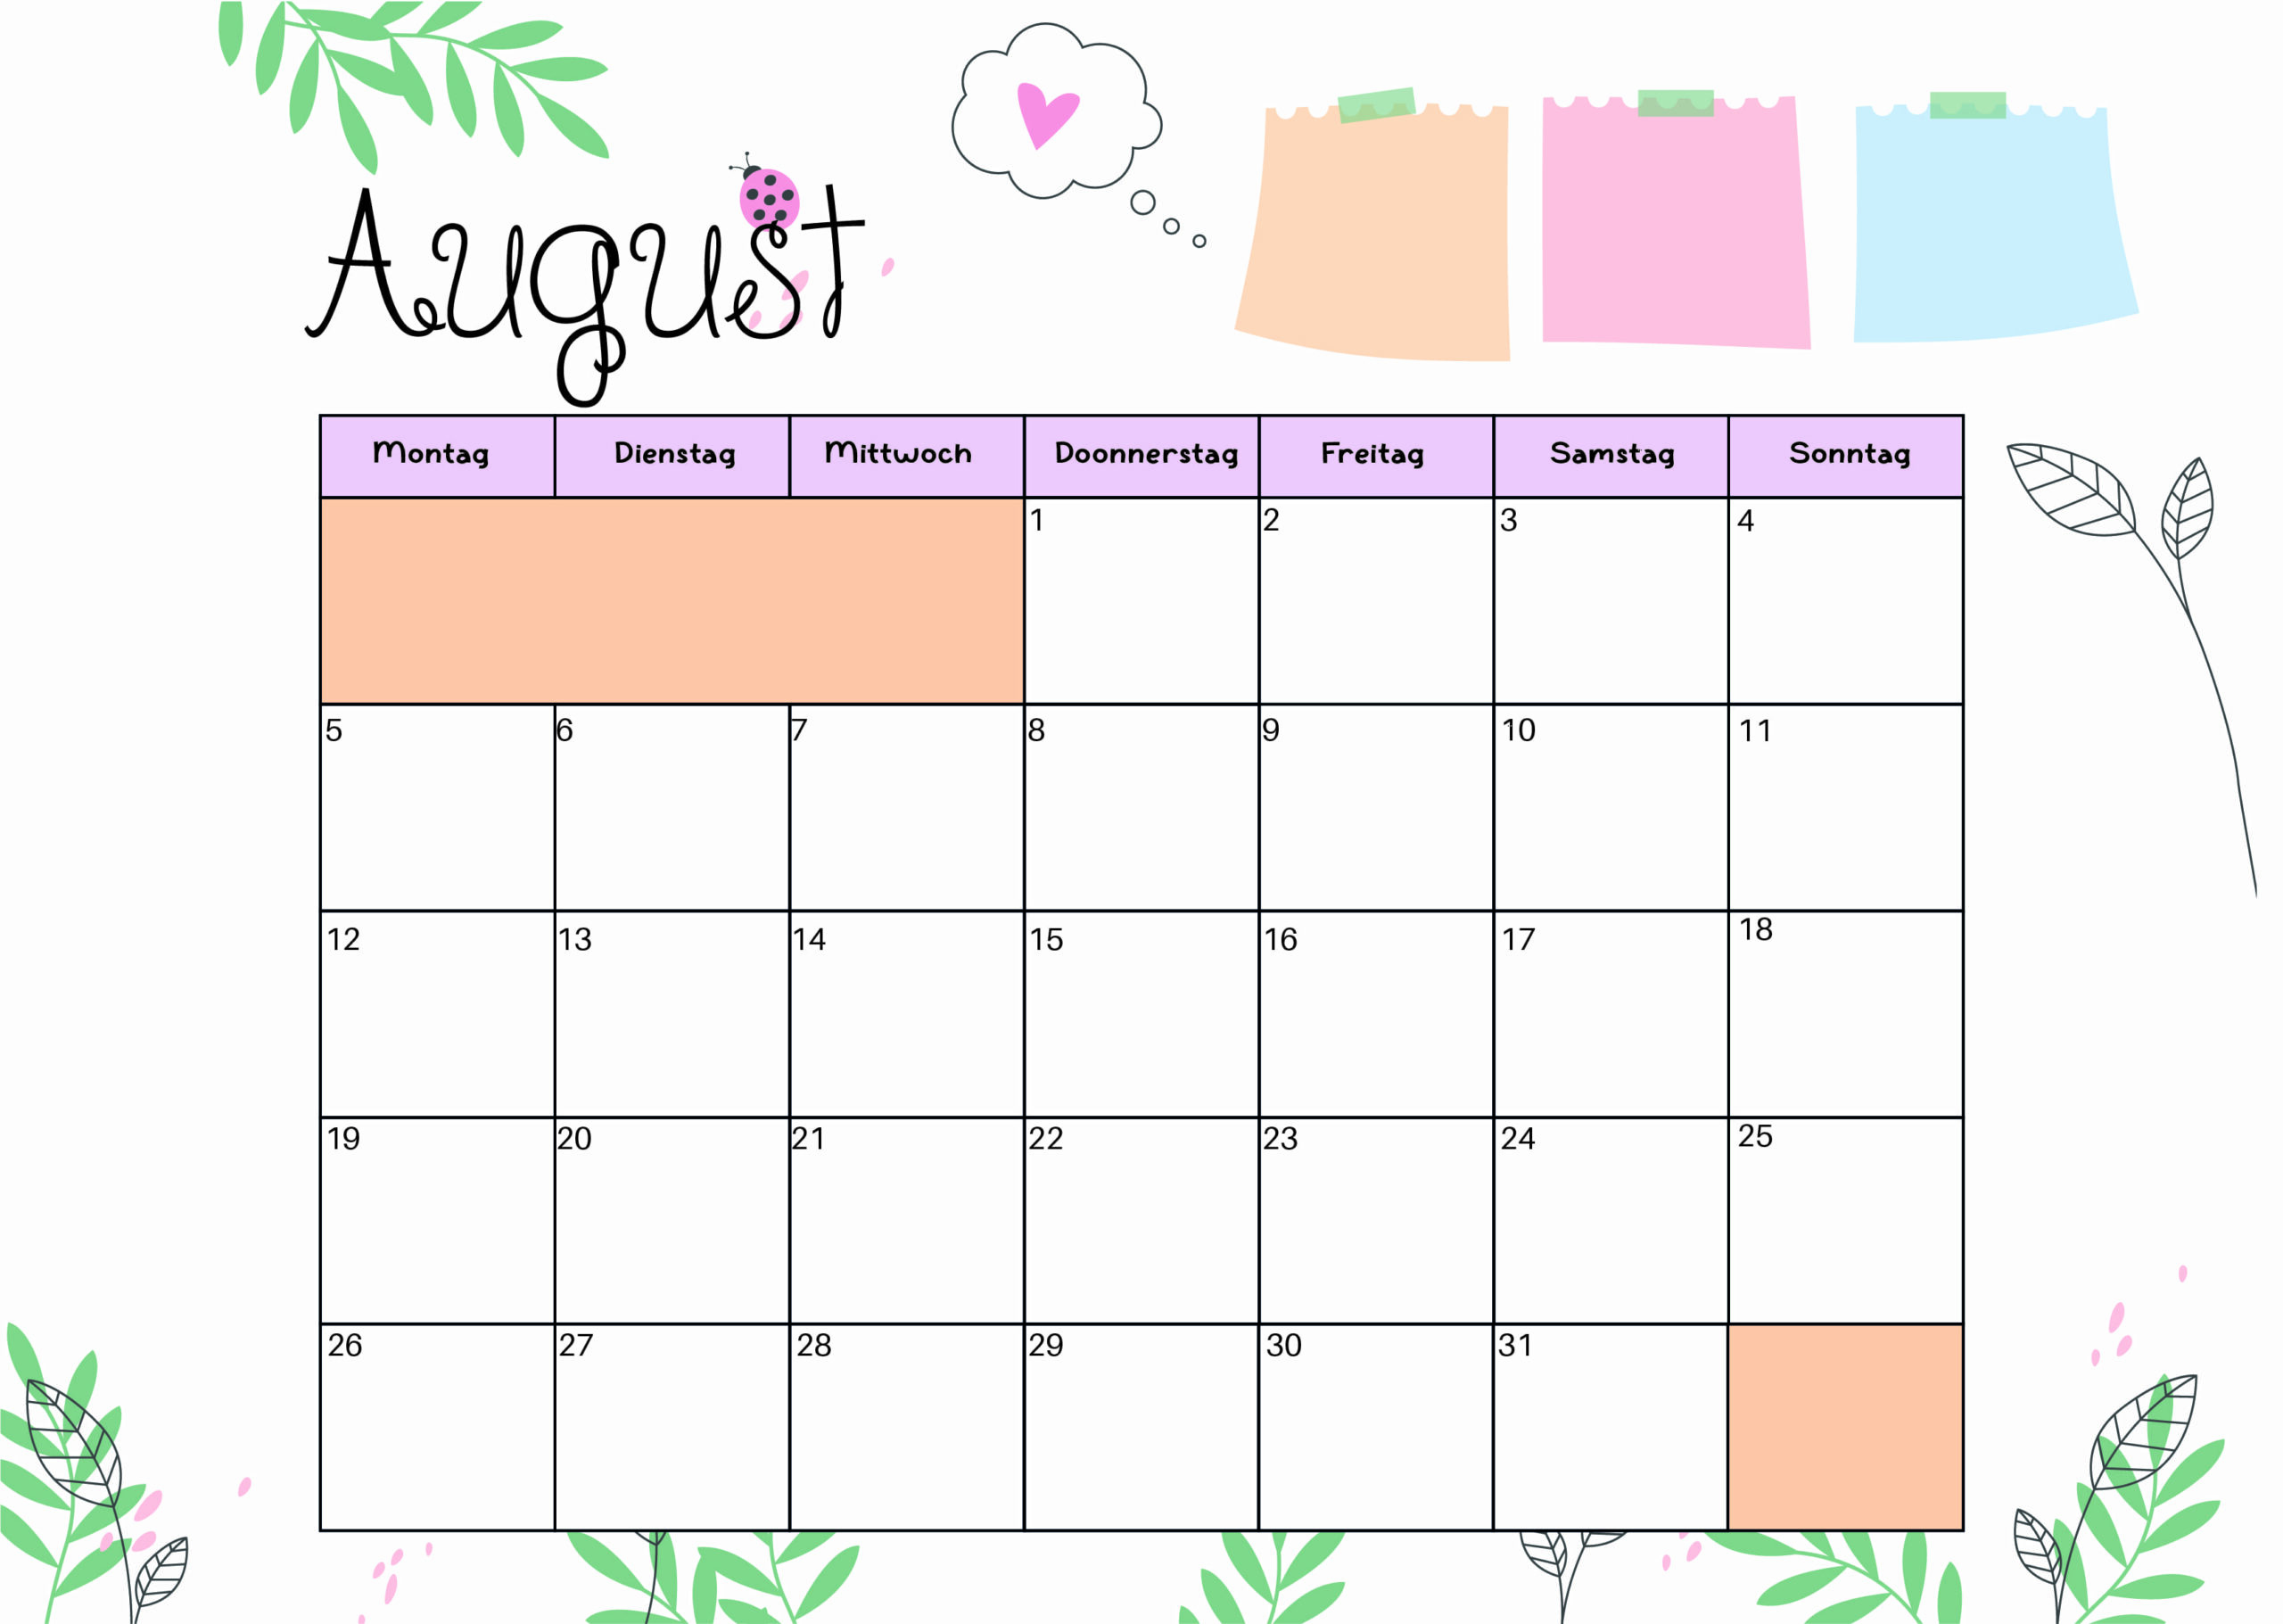 Kalender August 2024 zum Ausdrucken